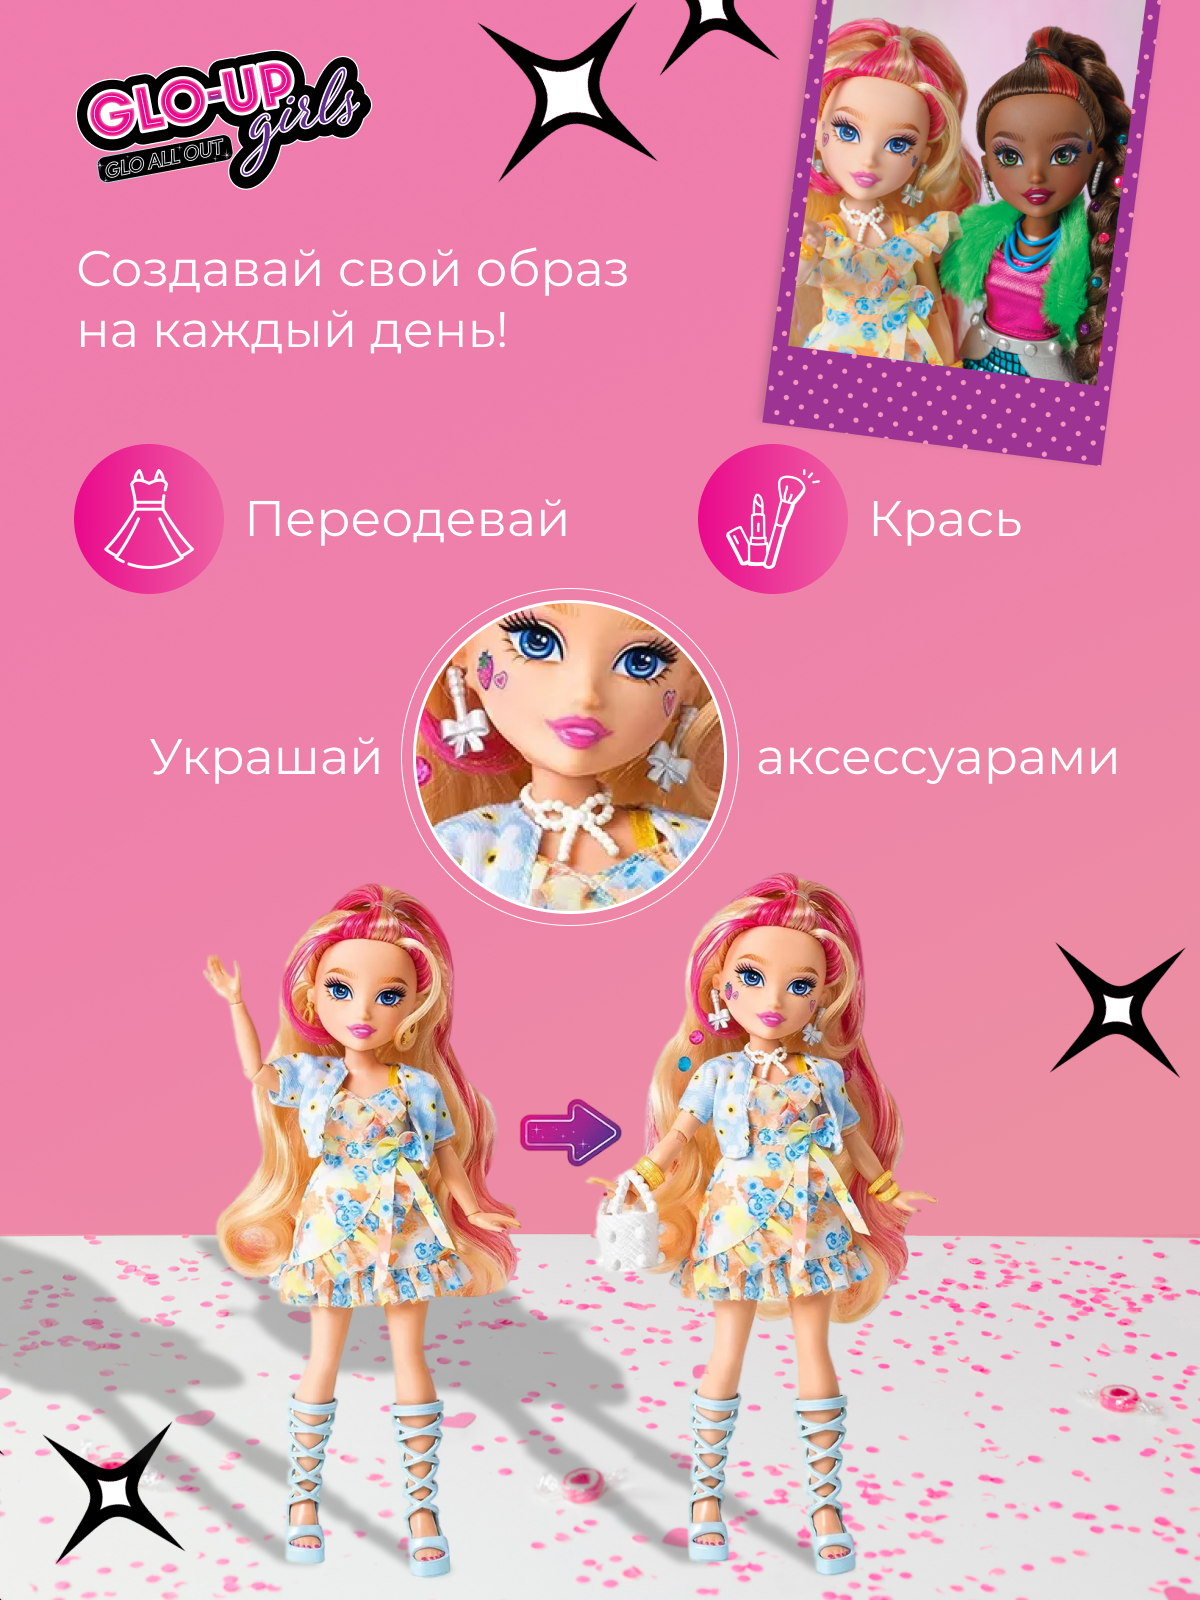 Кукла GLO-UP girls Тиффани FAR83011 - фото 6